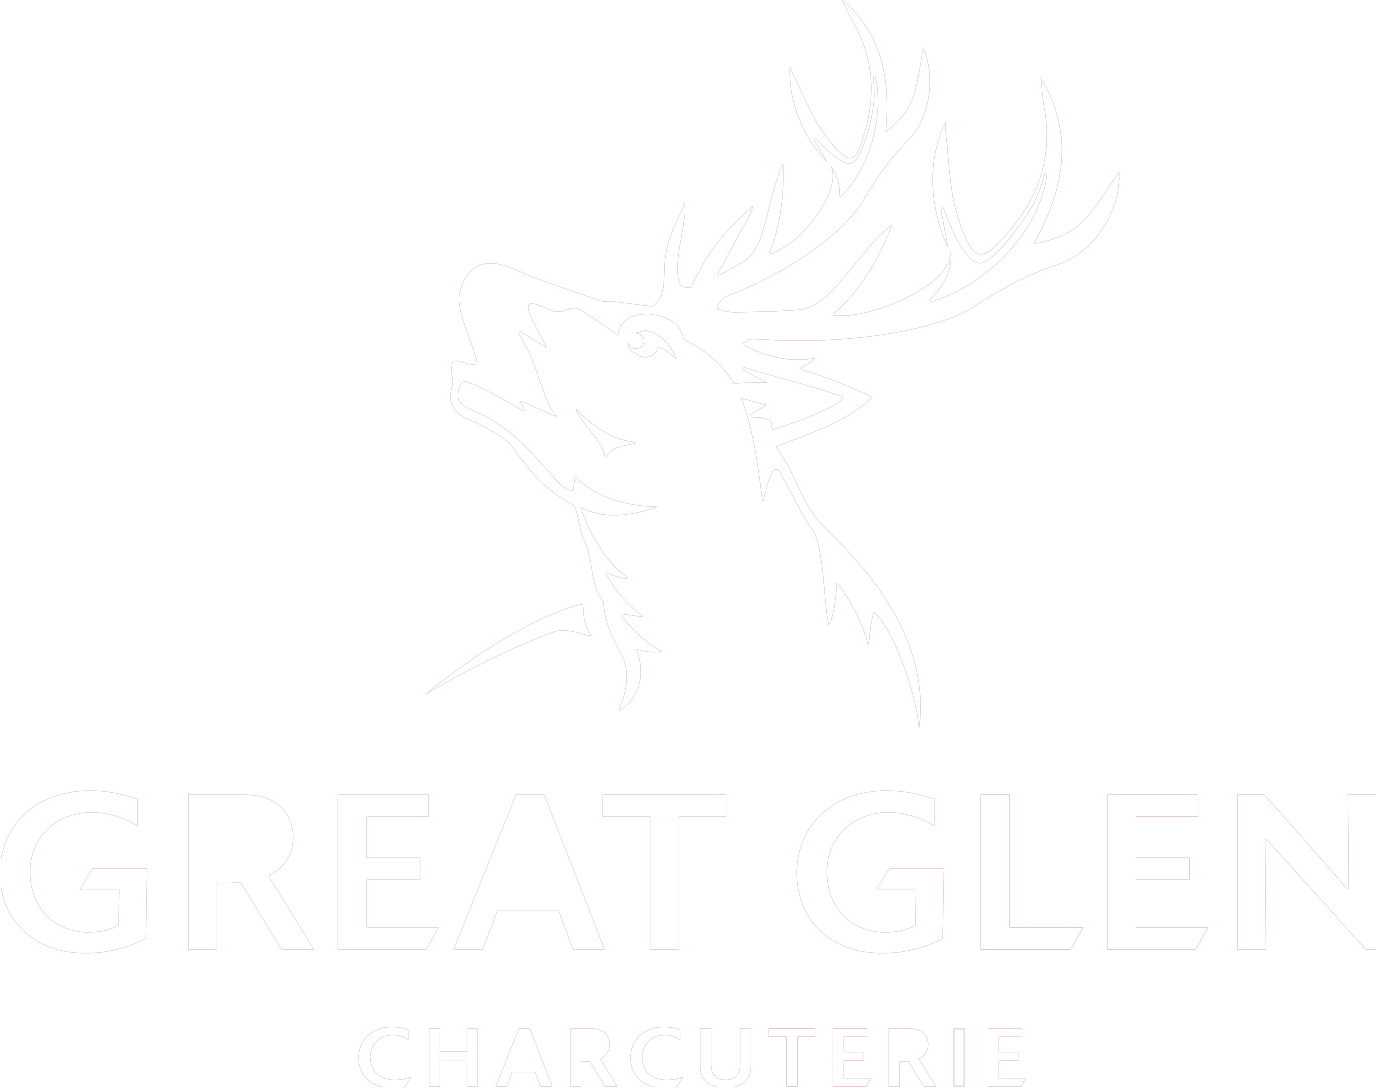 Great Glen Charcuterie